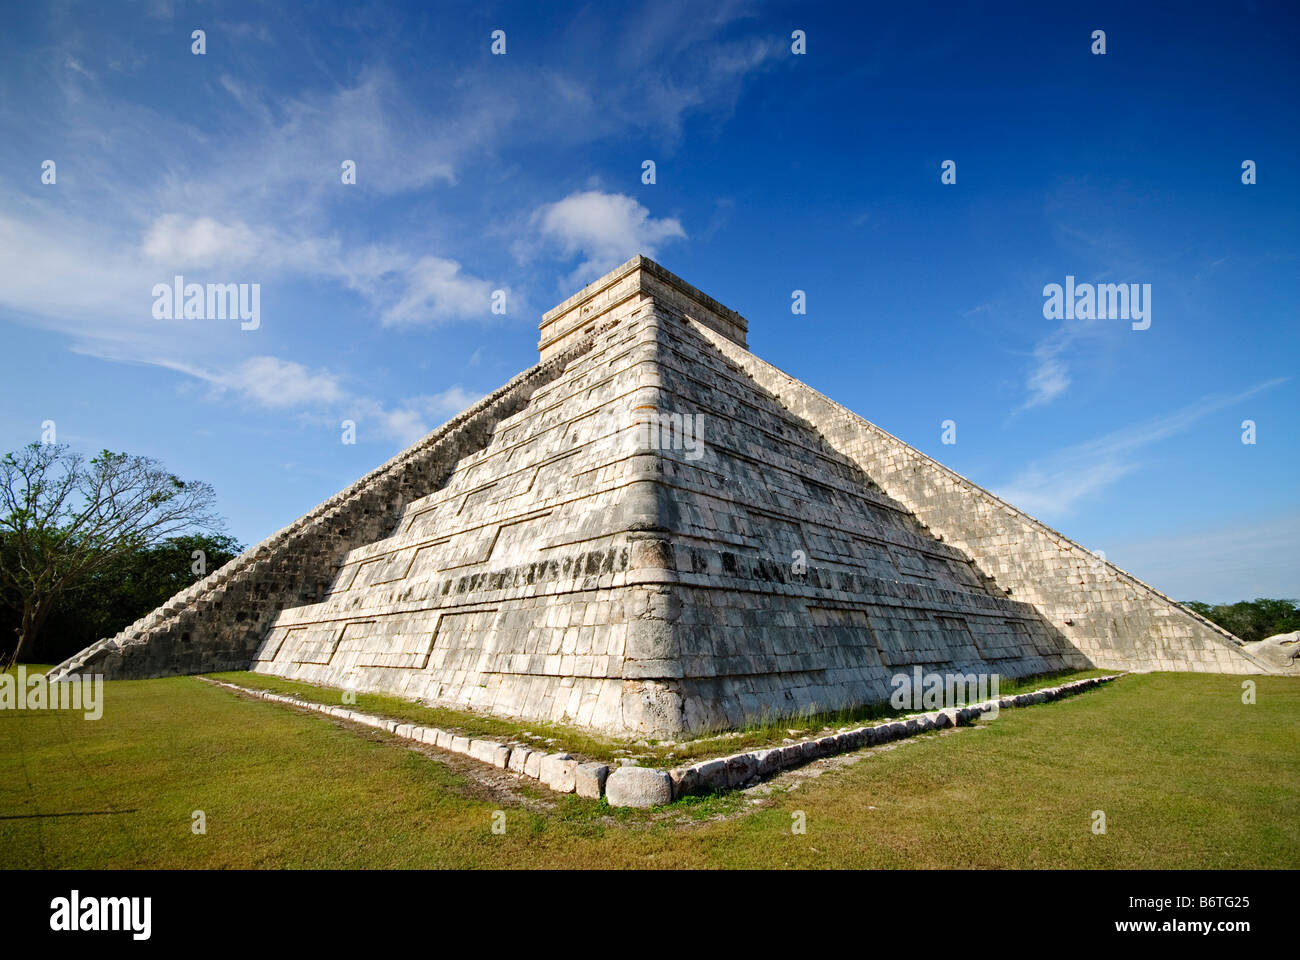 CHICHEN ITZA, Mexiko - El Castillo (auch bekannt als Tempel von Kuklcan) in den antiken Maya-Ruinen in Chichen Itza, Yucatan, Mexiko. 081216092810 1931x.tif. Chichen Itza befindet sich auf der Yucatan-Halbinsel in Mexiko und ist eine bedeutende archäologische Stätte, die die reiche Geschichte und fortgeschrittene wissenschaftliche Kenntnisse der alten Maya-Zivilisation zeigt. Sie ist vor allem bekannt für die Kukulkan Pyramide, oder „El Castillo“, eine vierseitige Struktur mit 91 Stufen auf jeder Seite, die in einem einzigen Schritt auf der Spitze gipfelt, um die 365 Tage des Sonnenjahres zu repräsentieren. Stockfoto